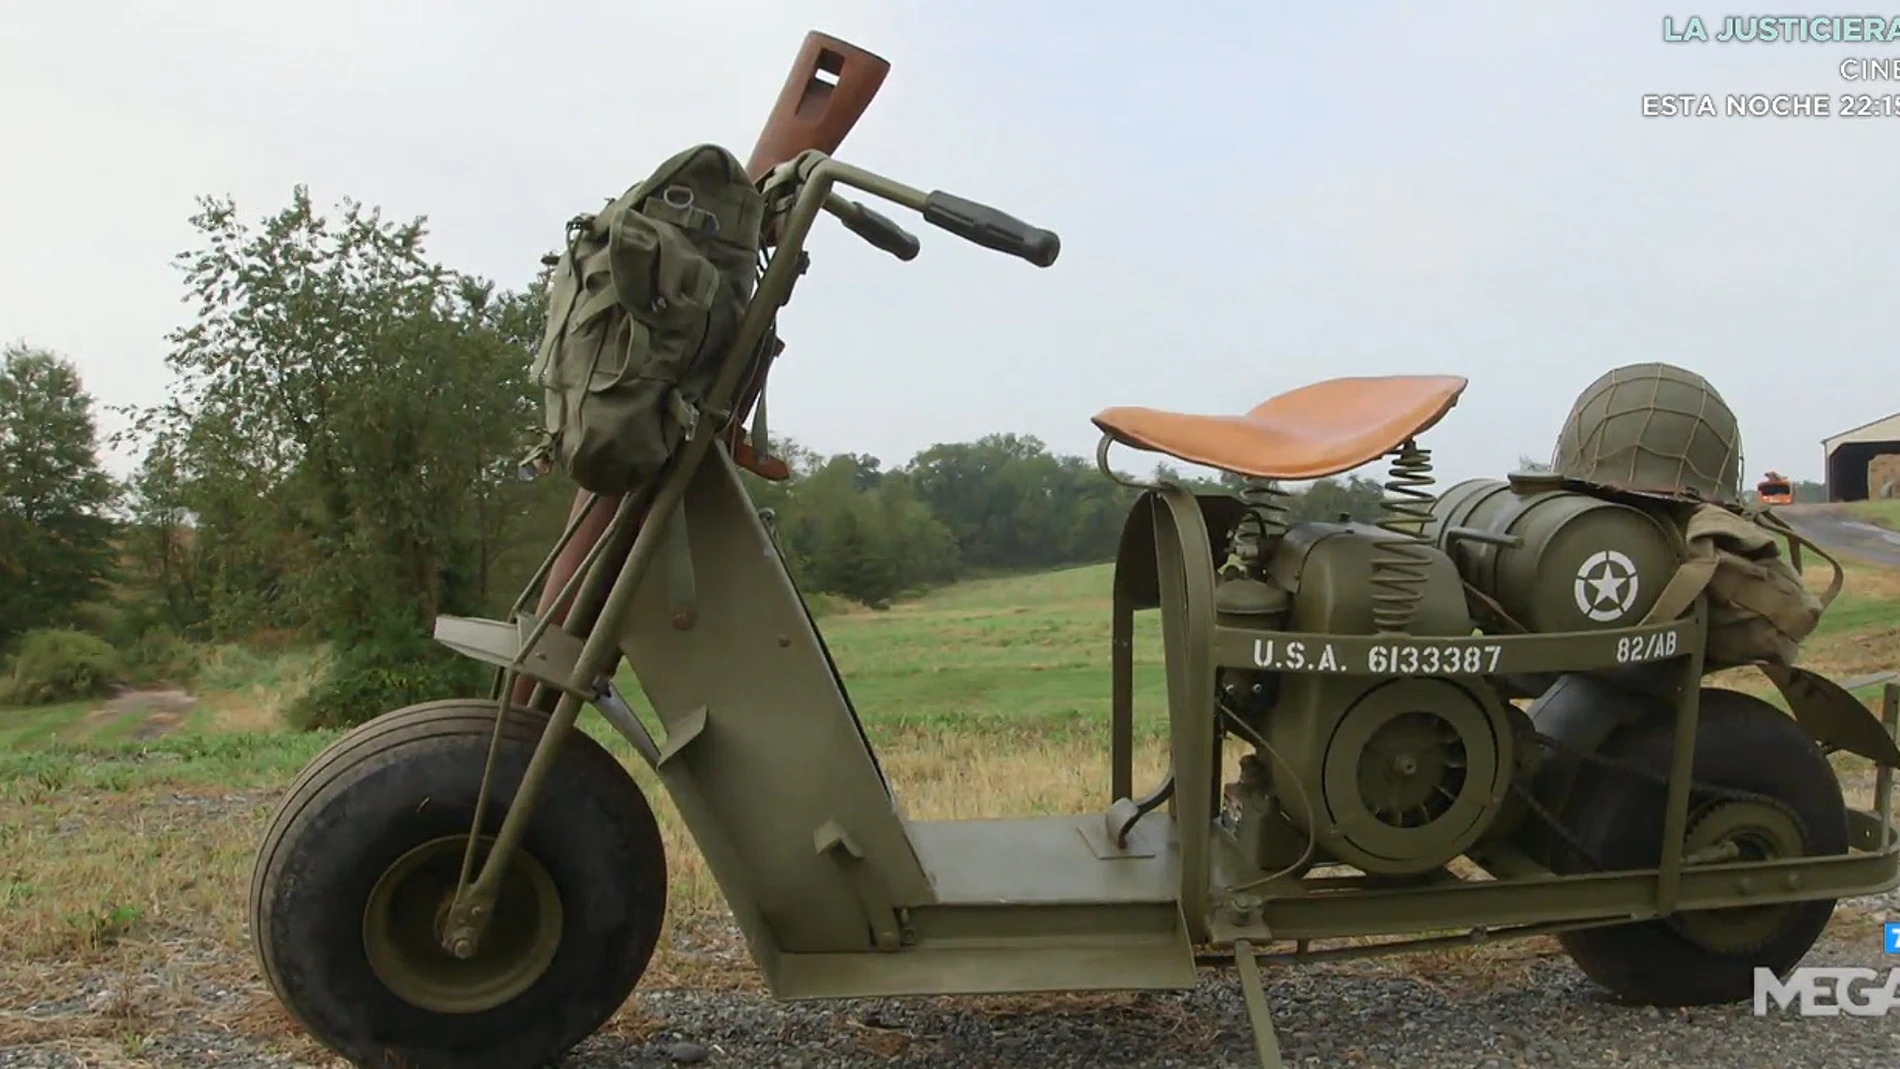 VÍDEO - LA CASA DE EMPEÑOS: ¿Pagará Rick un dineral por esta moto de la Segunda  Guerra Mundial?